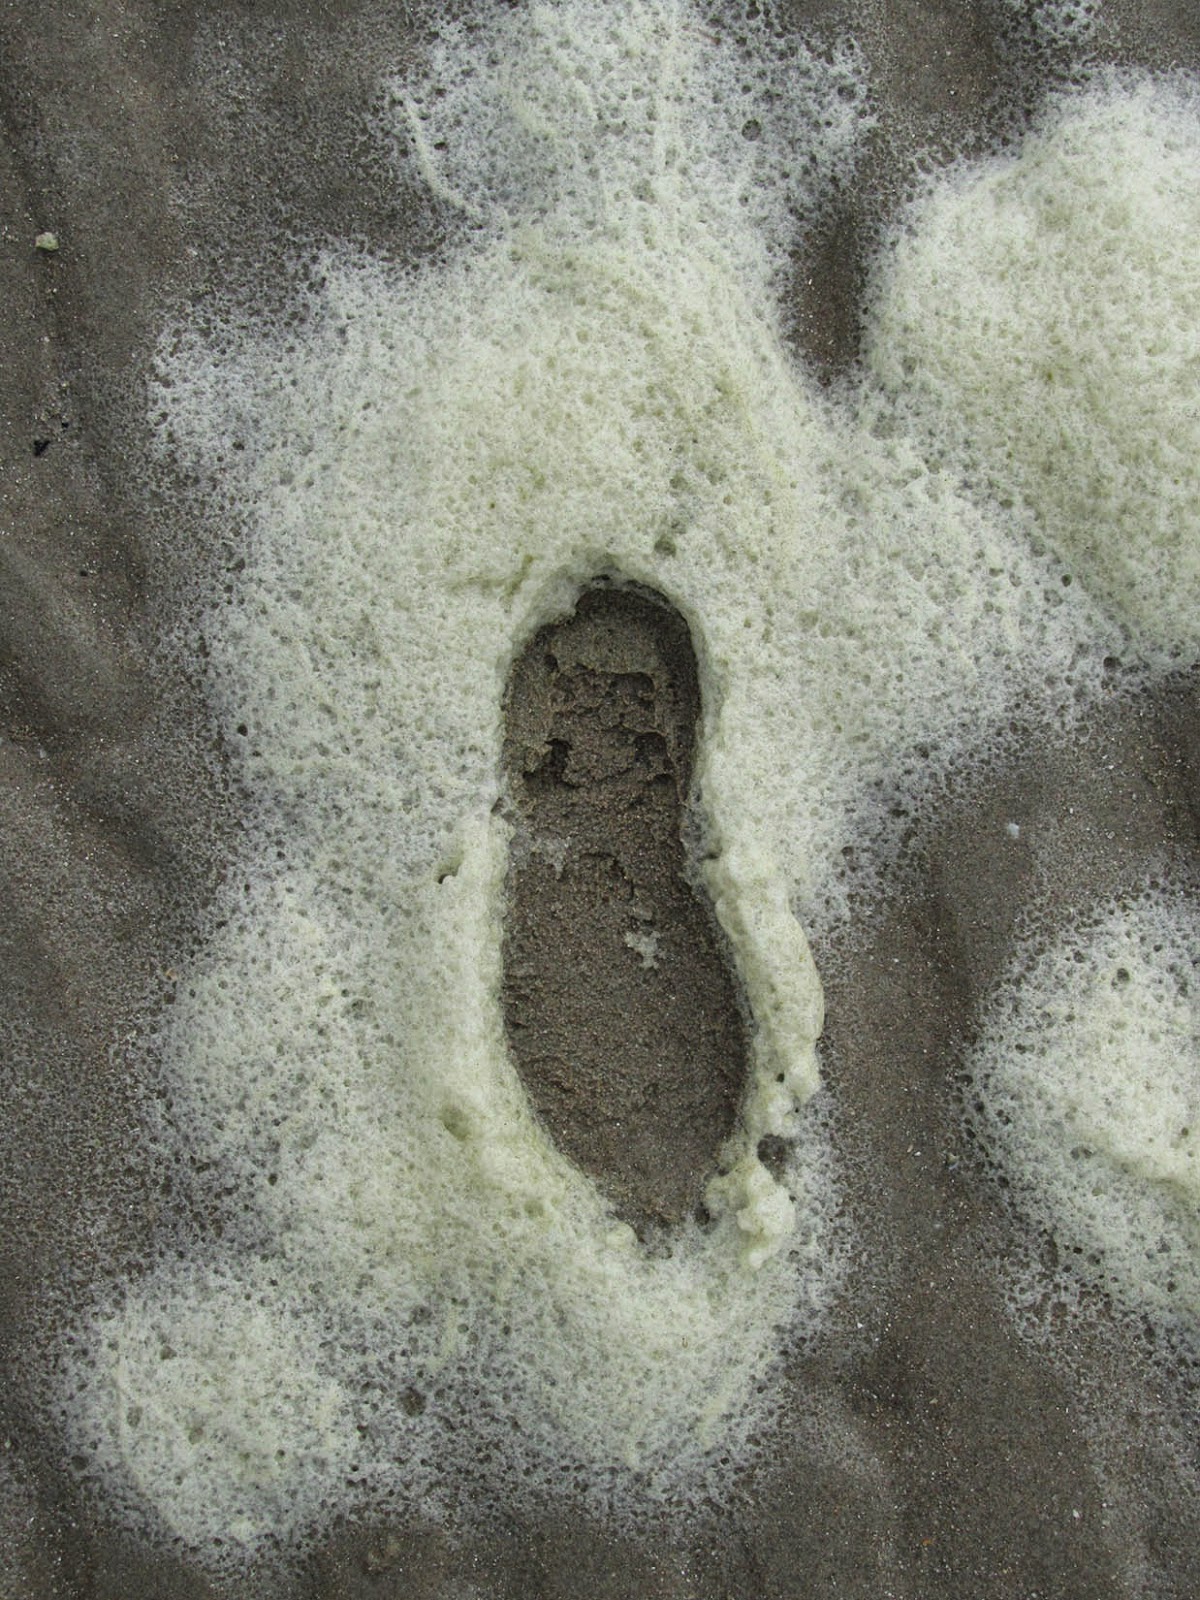 footstep in sea foam